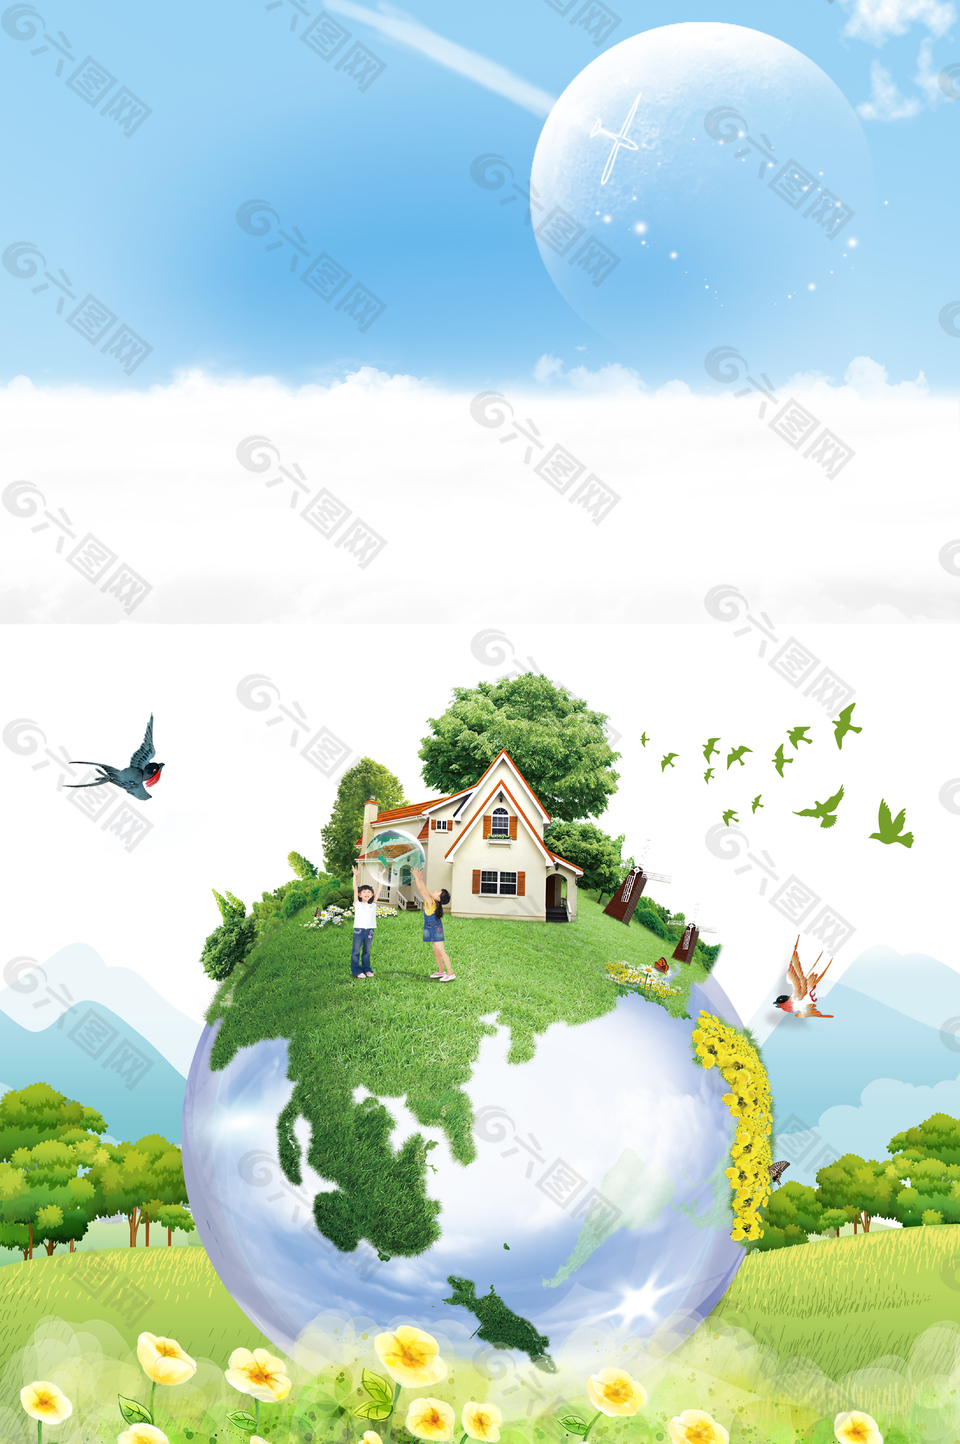 世界環境日節日海報背景